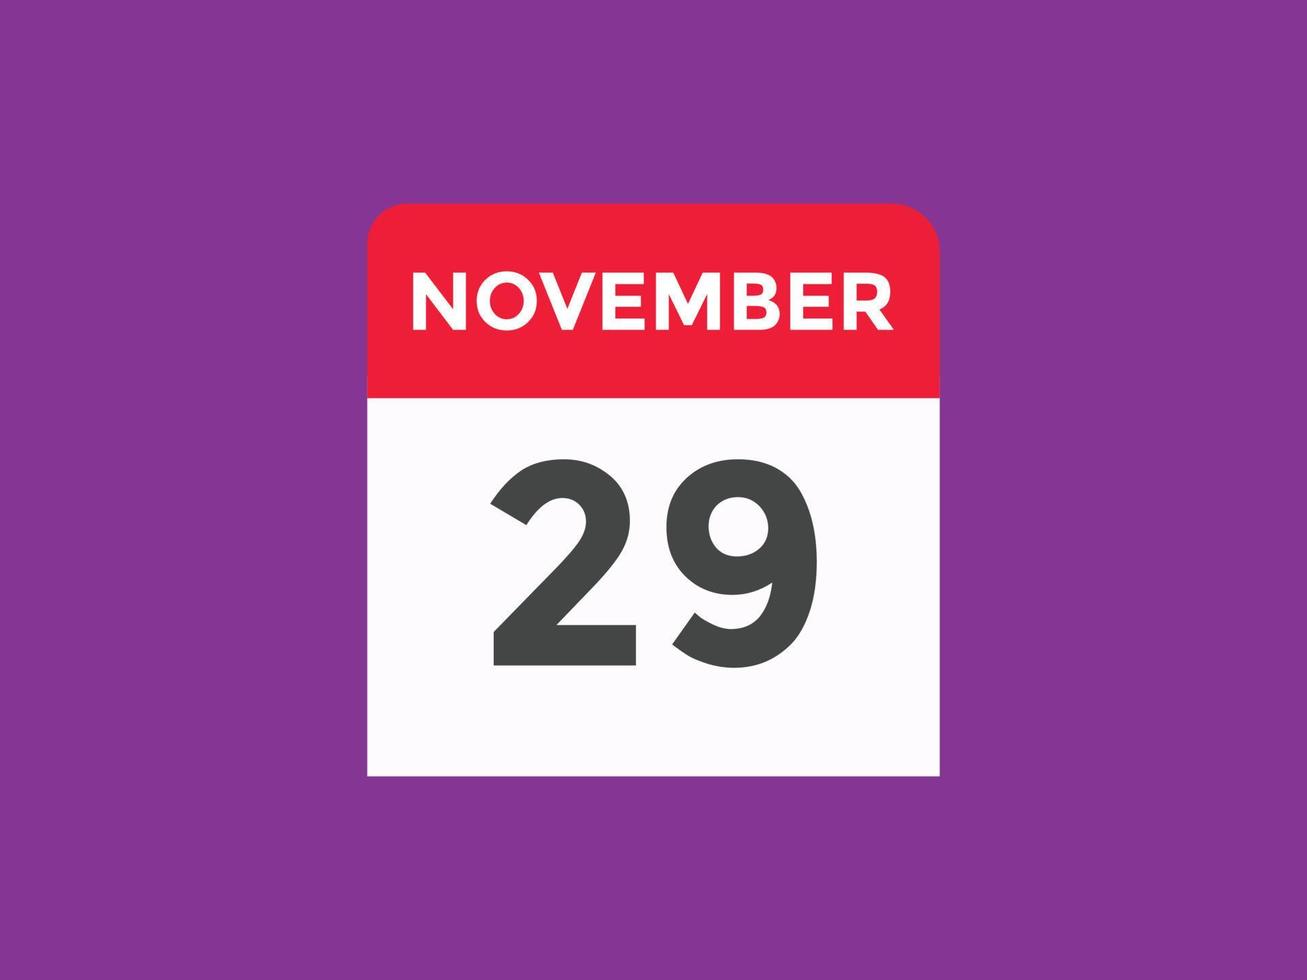 novembre 29 calendario promemoria. 29th novembre quotidiano calendario icona modello. calendario 29th novembre icona design modello. vettore illustrazione